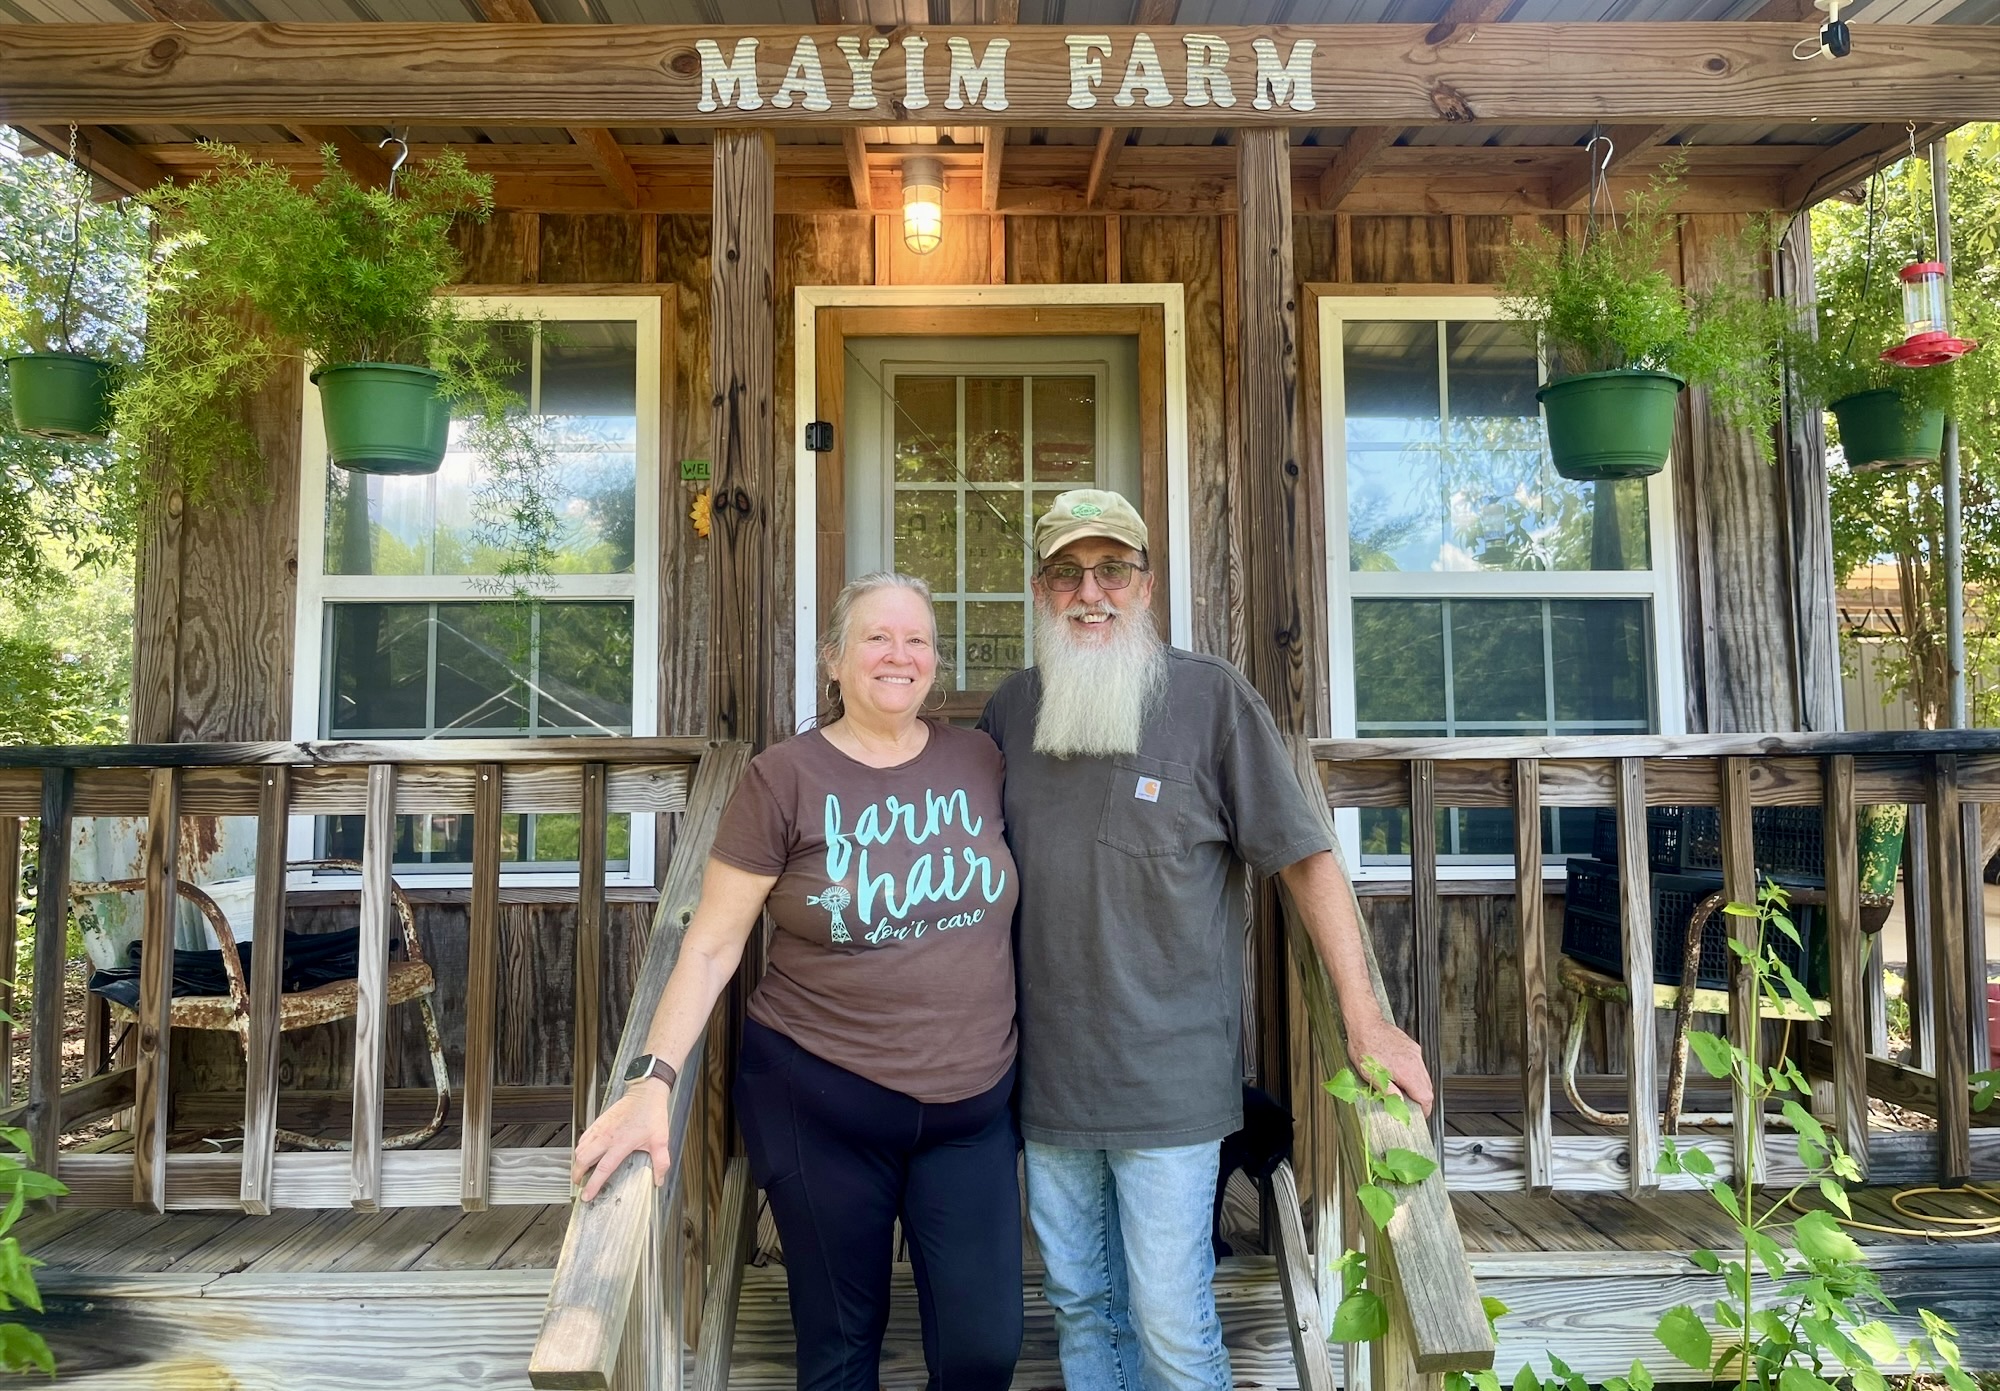 Greg and Carol Lolley take a break at Mayim Farm, established in 2011 near Elba.